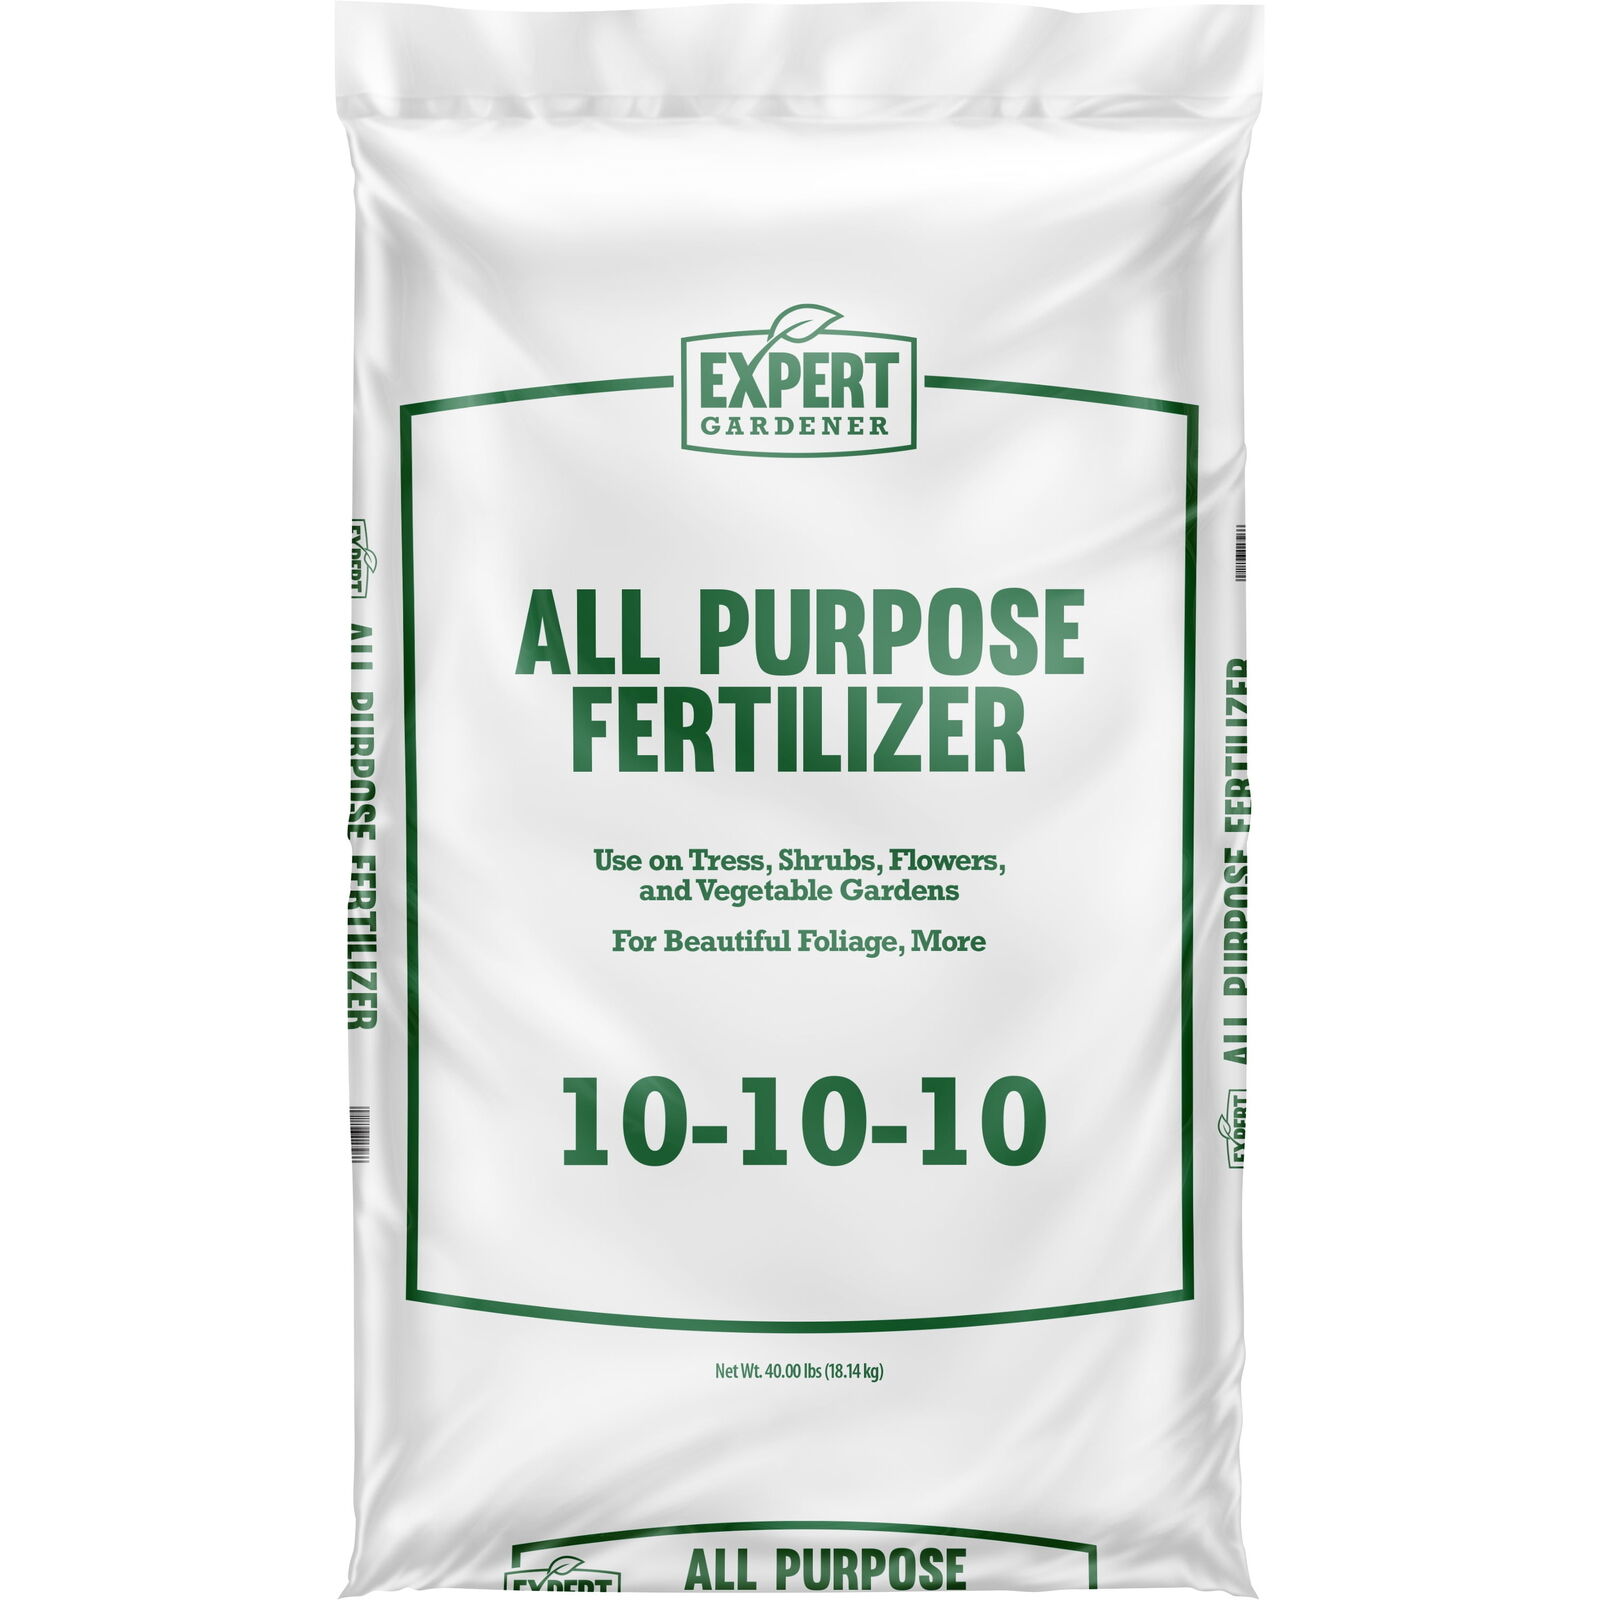 All Purpose Plant Fertilizer, 10-10-10 Fertilizer, 40 lb.